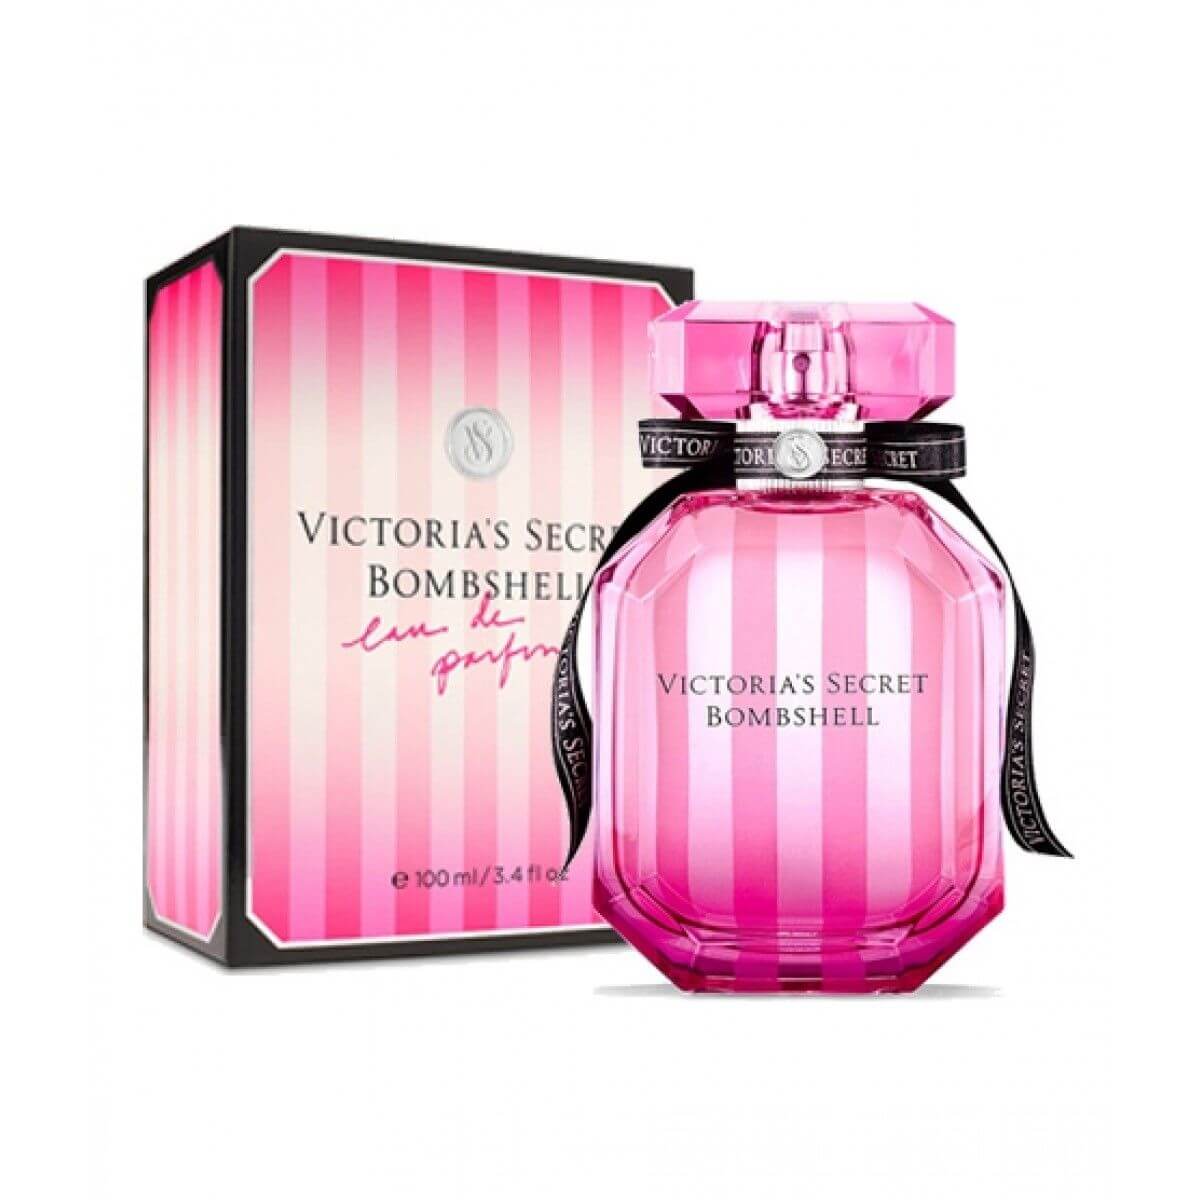 Victoria's Secret Bombshell perfume in Pakistan